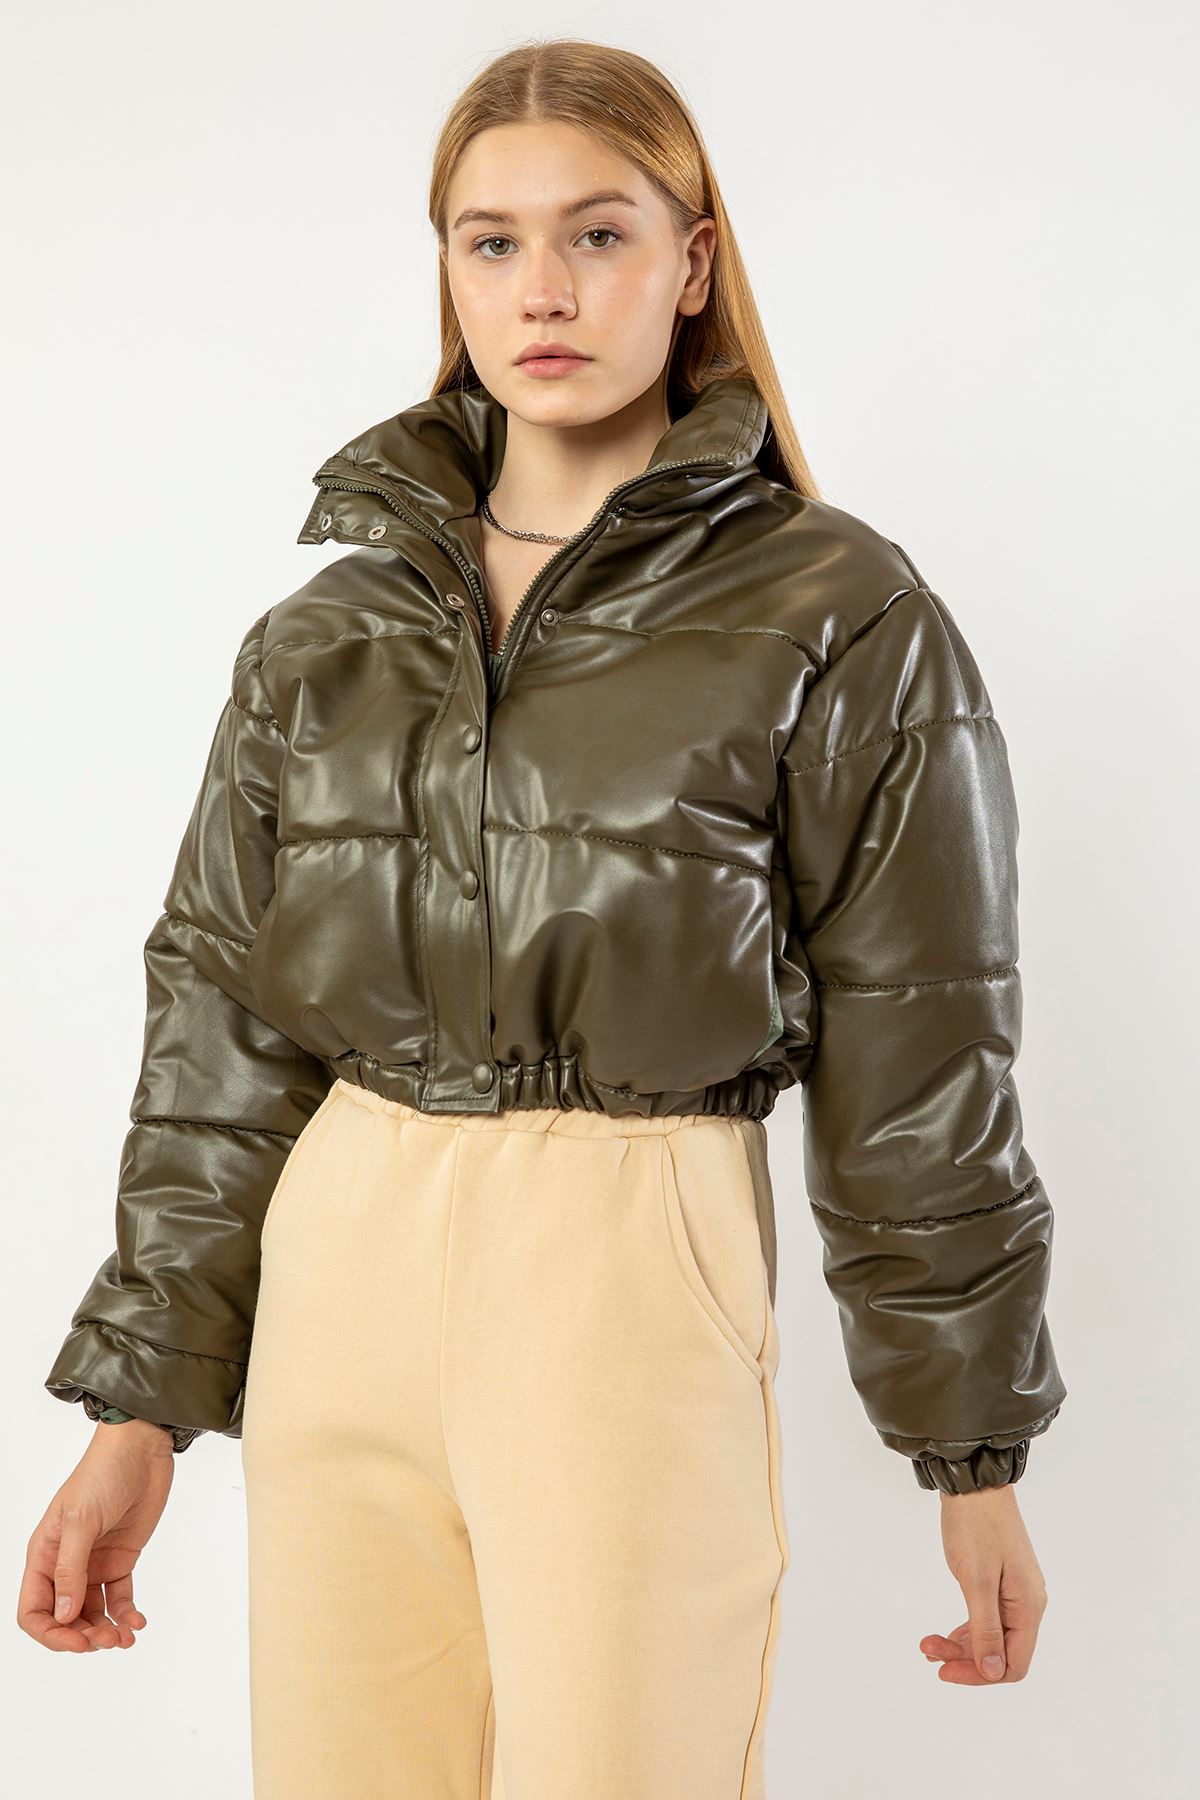 Leather Fabric Long Sleeve Zip Neck Short Oversize Women Coat - Khaki 